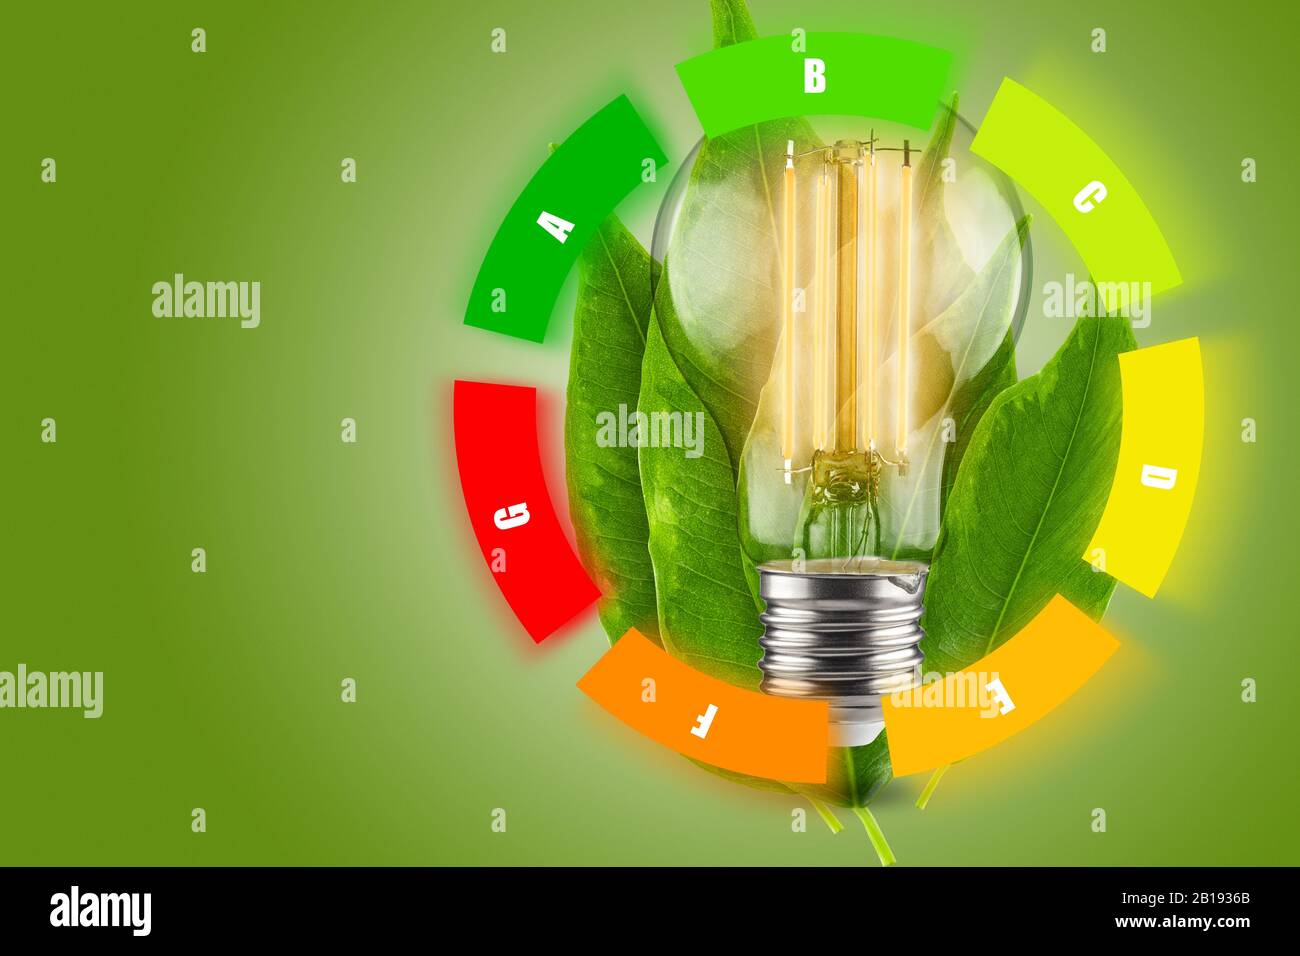 Concept d'efficacité énergétique des lampes LED. Diminution de la consommation d'électricité. Feuilles vertes d'une plante en arrière-plan. Banque D'Images